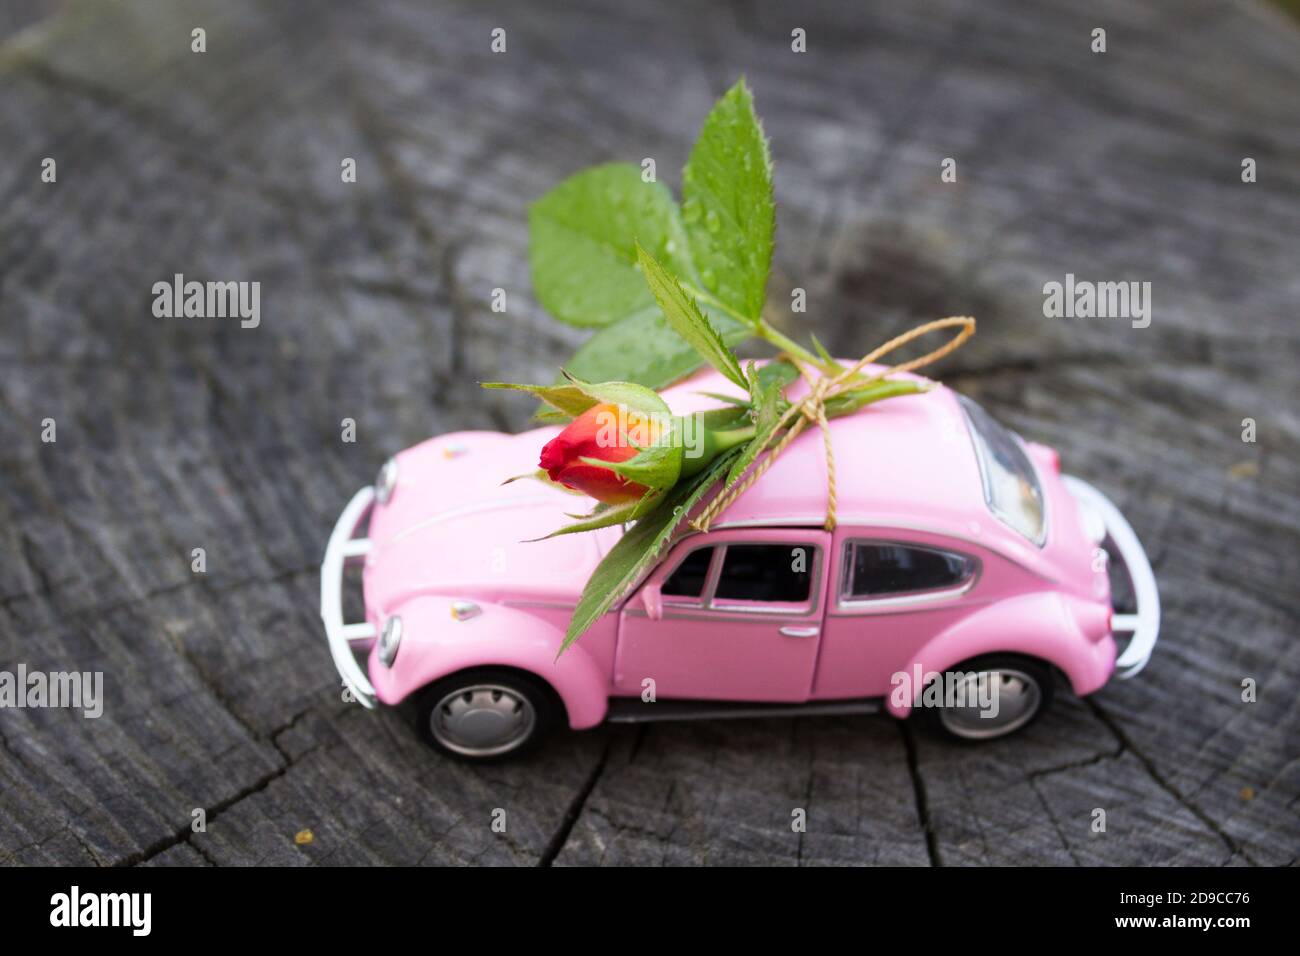 Spielzeug rosa Auto auf Holz Hintergrund mit roten Rosenzweig  Stockfotografie - Alamy